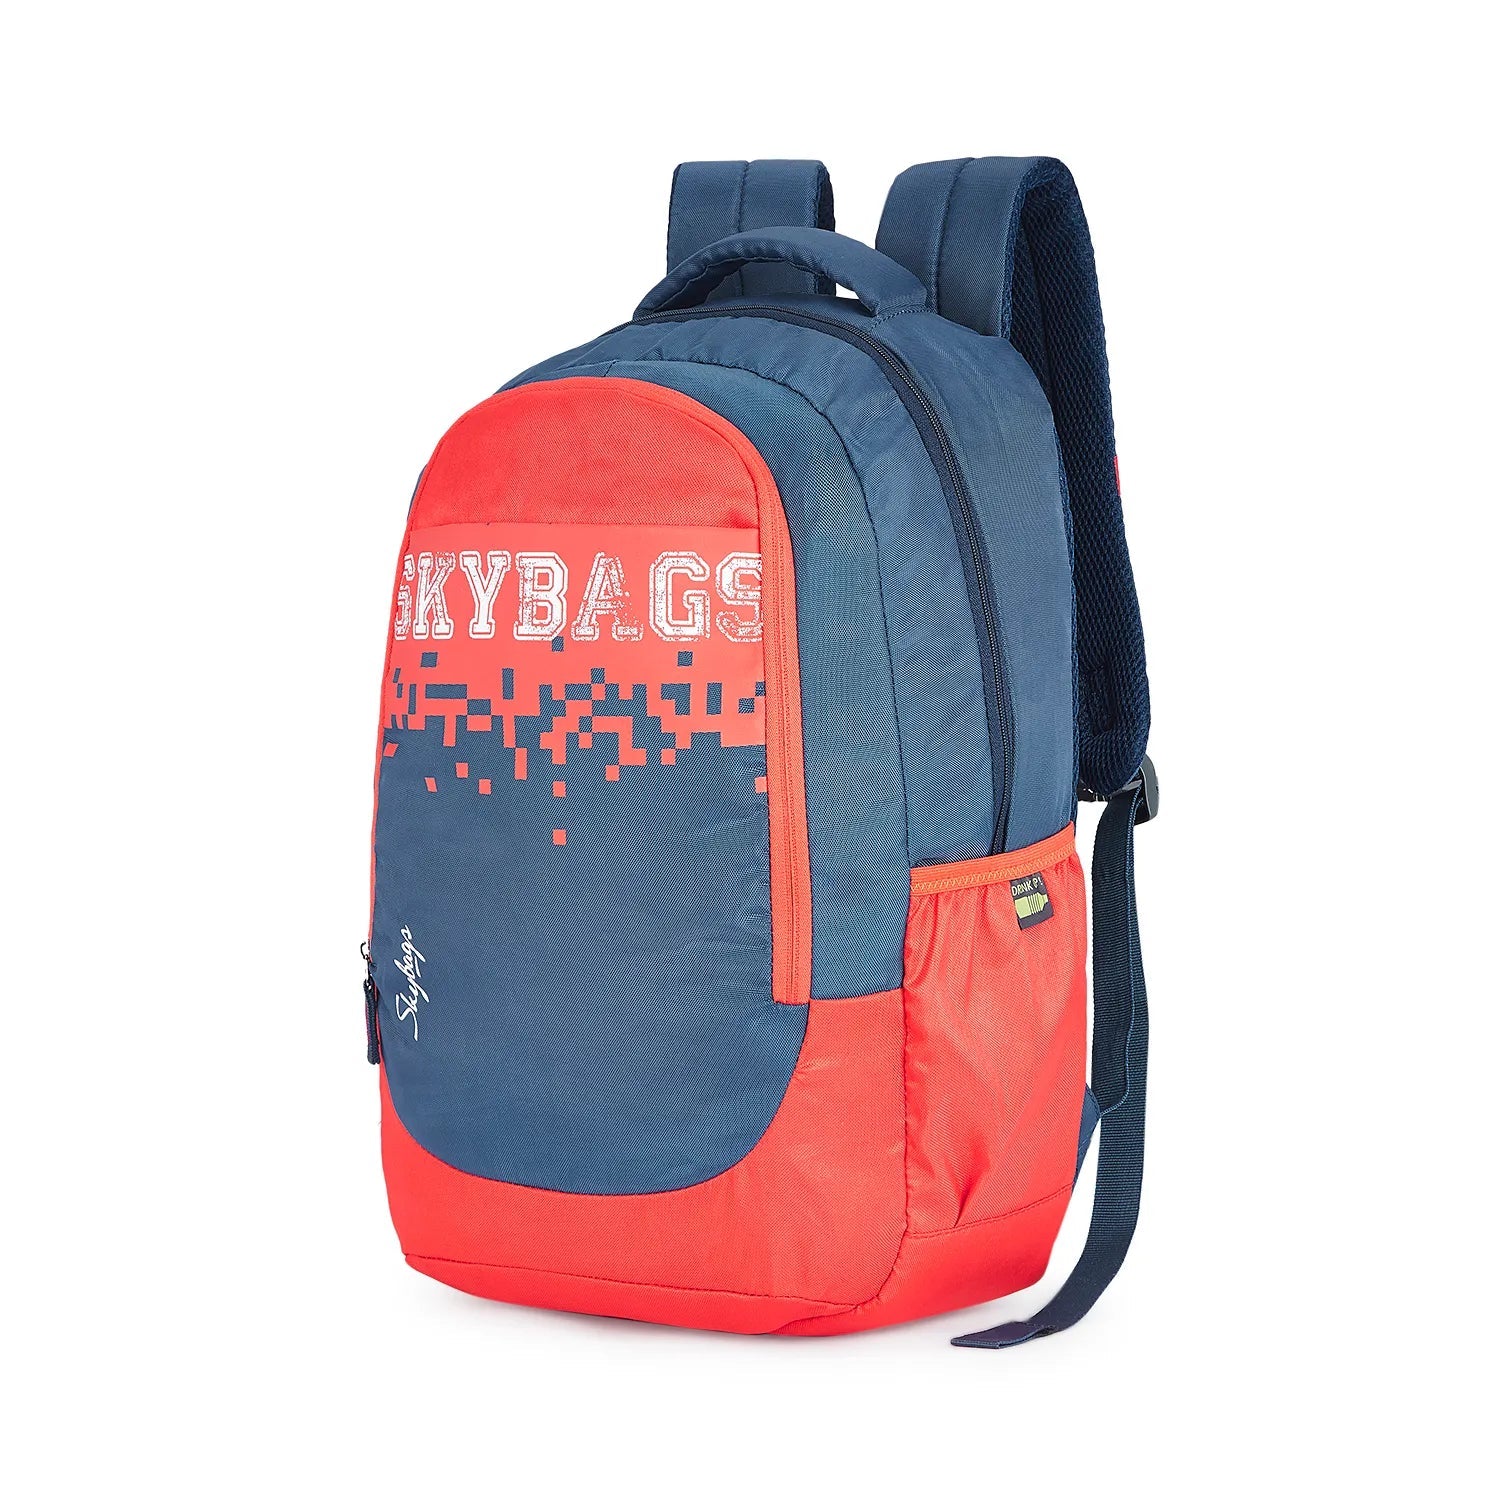 Skybags School Bags Backpack | Bags & Sleeves | Halabh.com